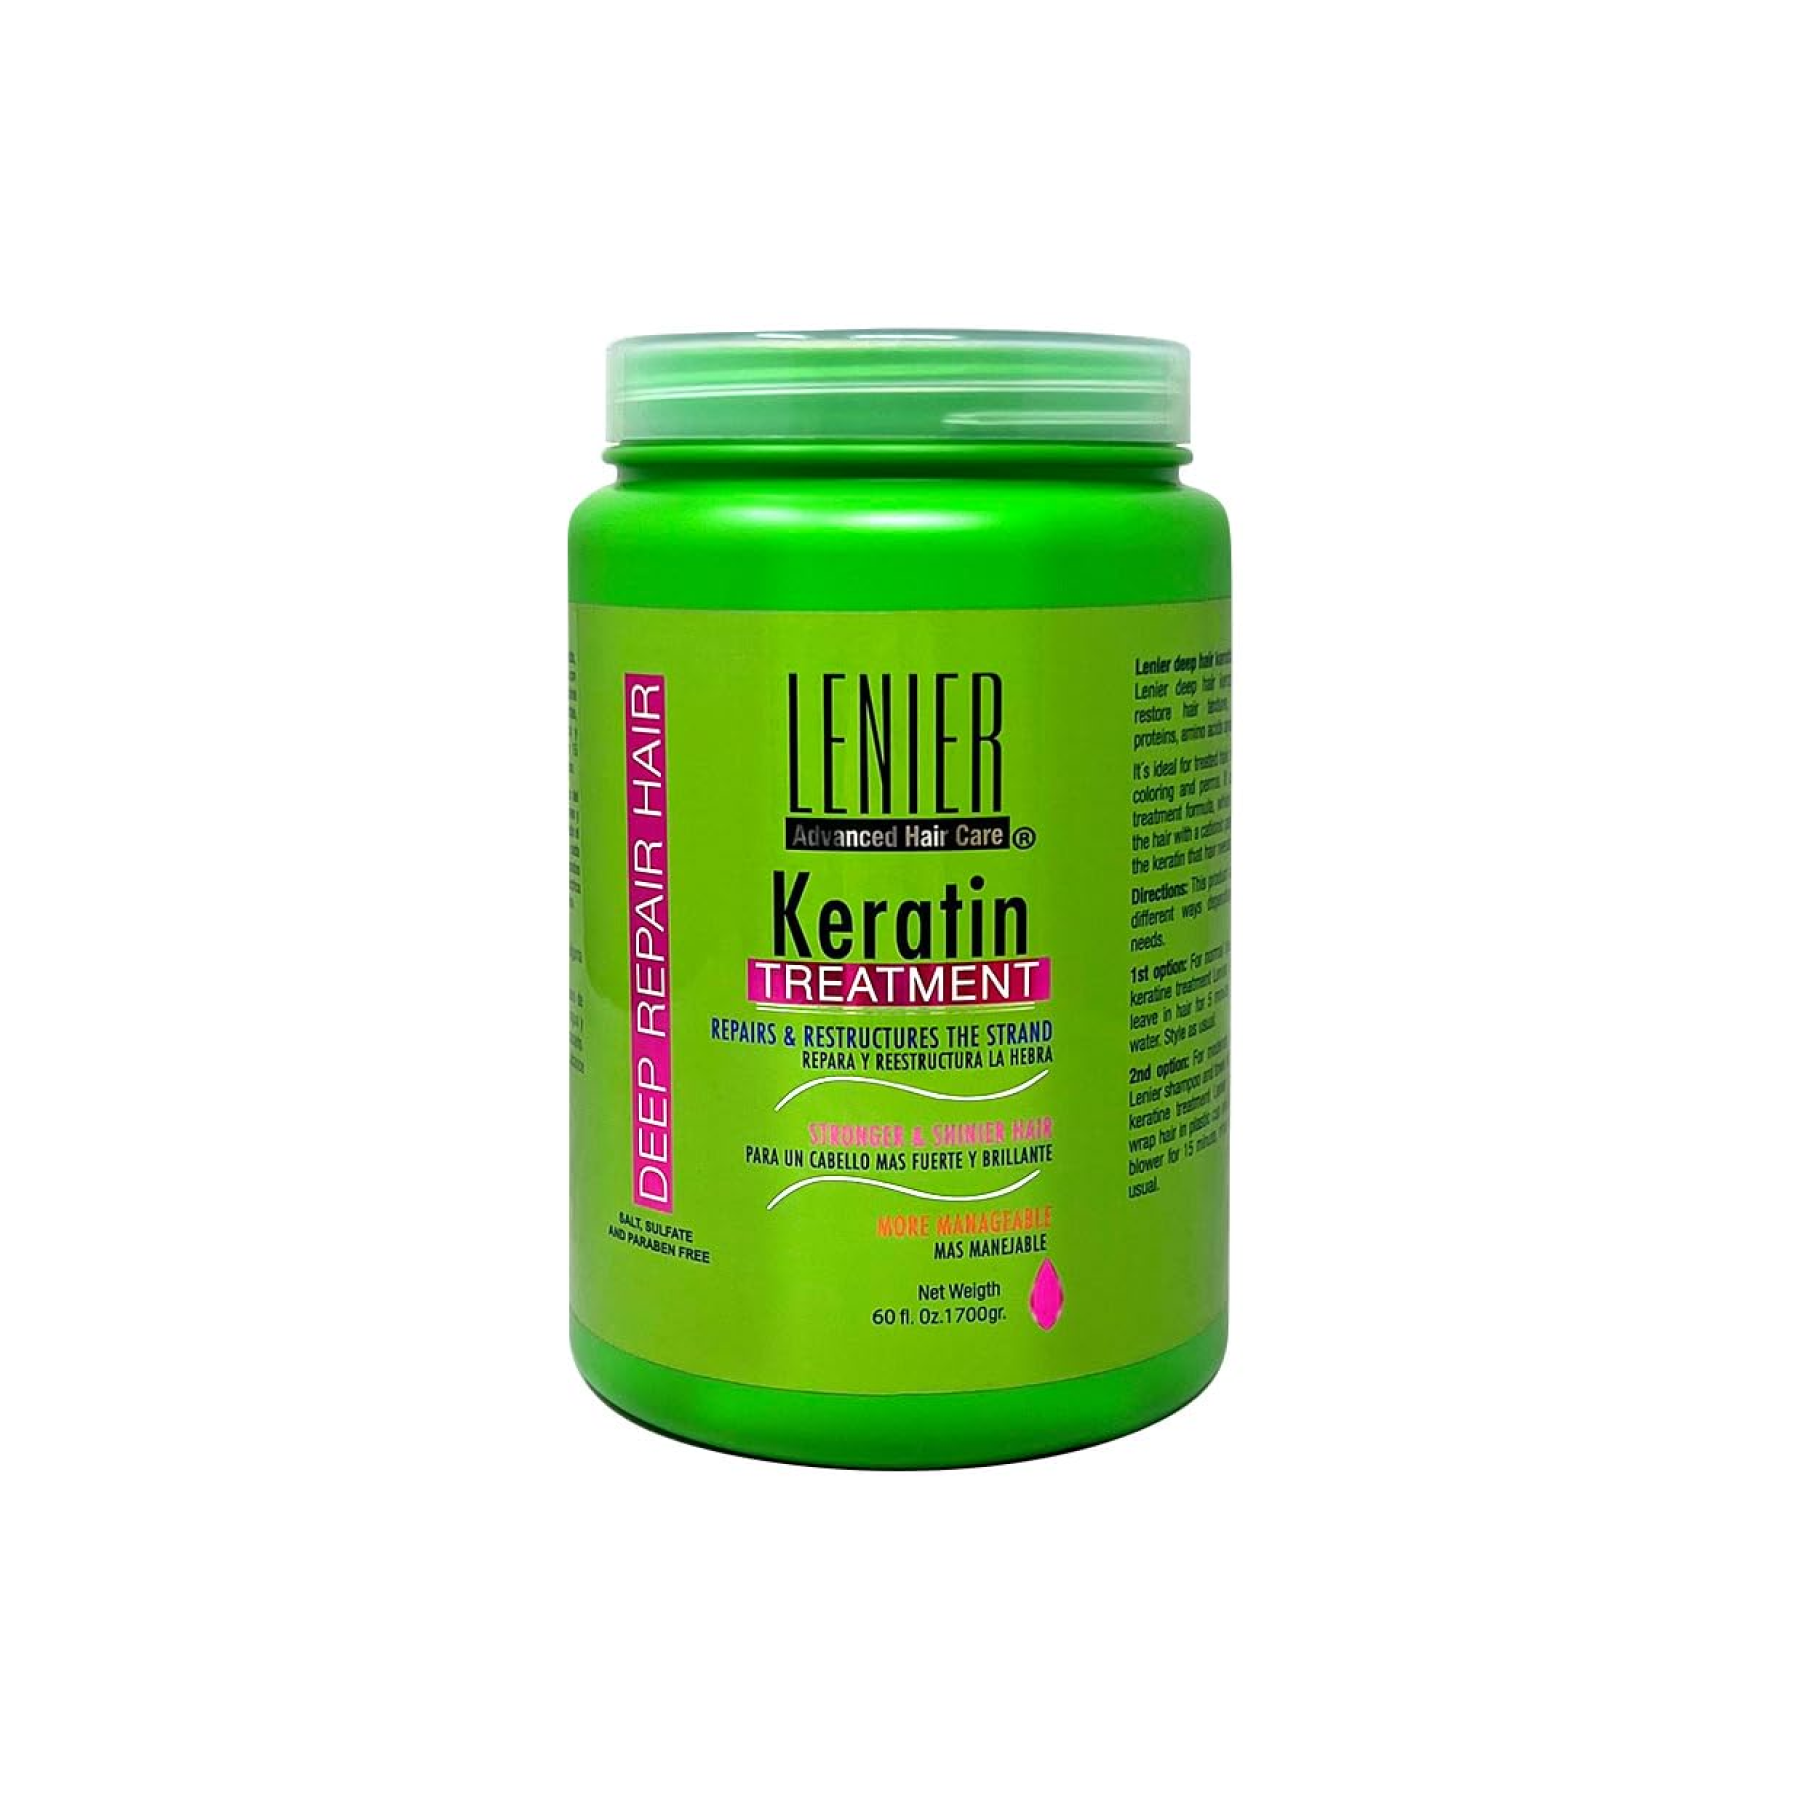 Lenier Keratin Treatment 60 oz